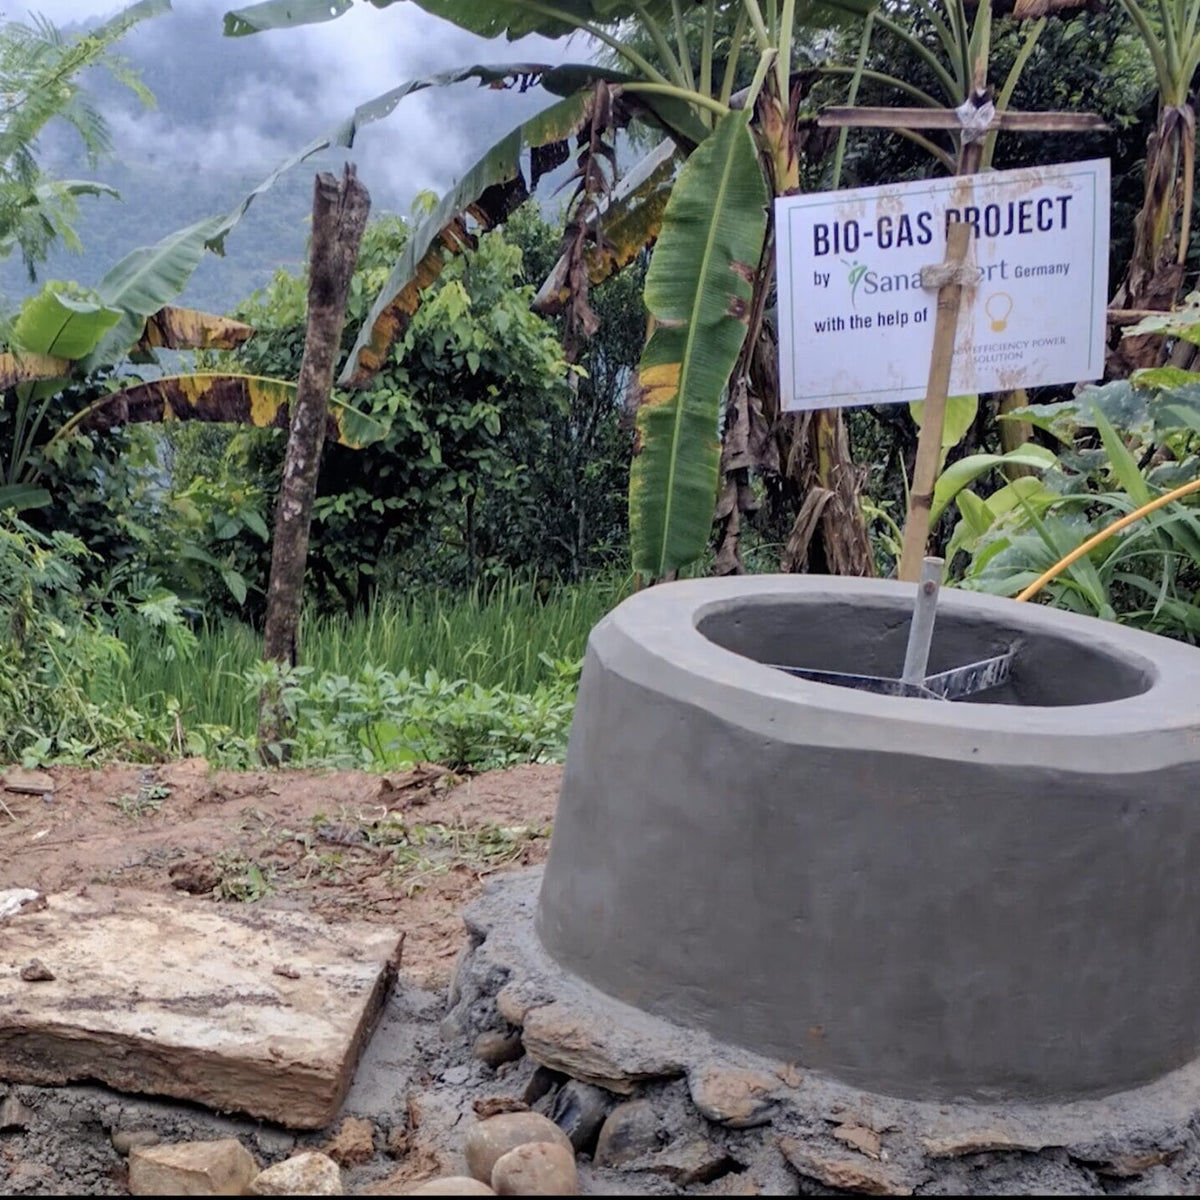 Biogas-Anlage im Freien mit einem Schild, das das Biogas-Projekt von SanaExpert ankündigt, umgeben von tropischer Vegetation.